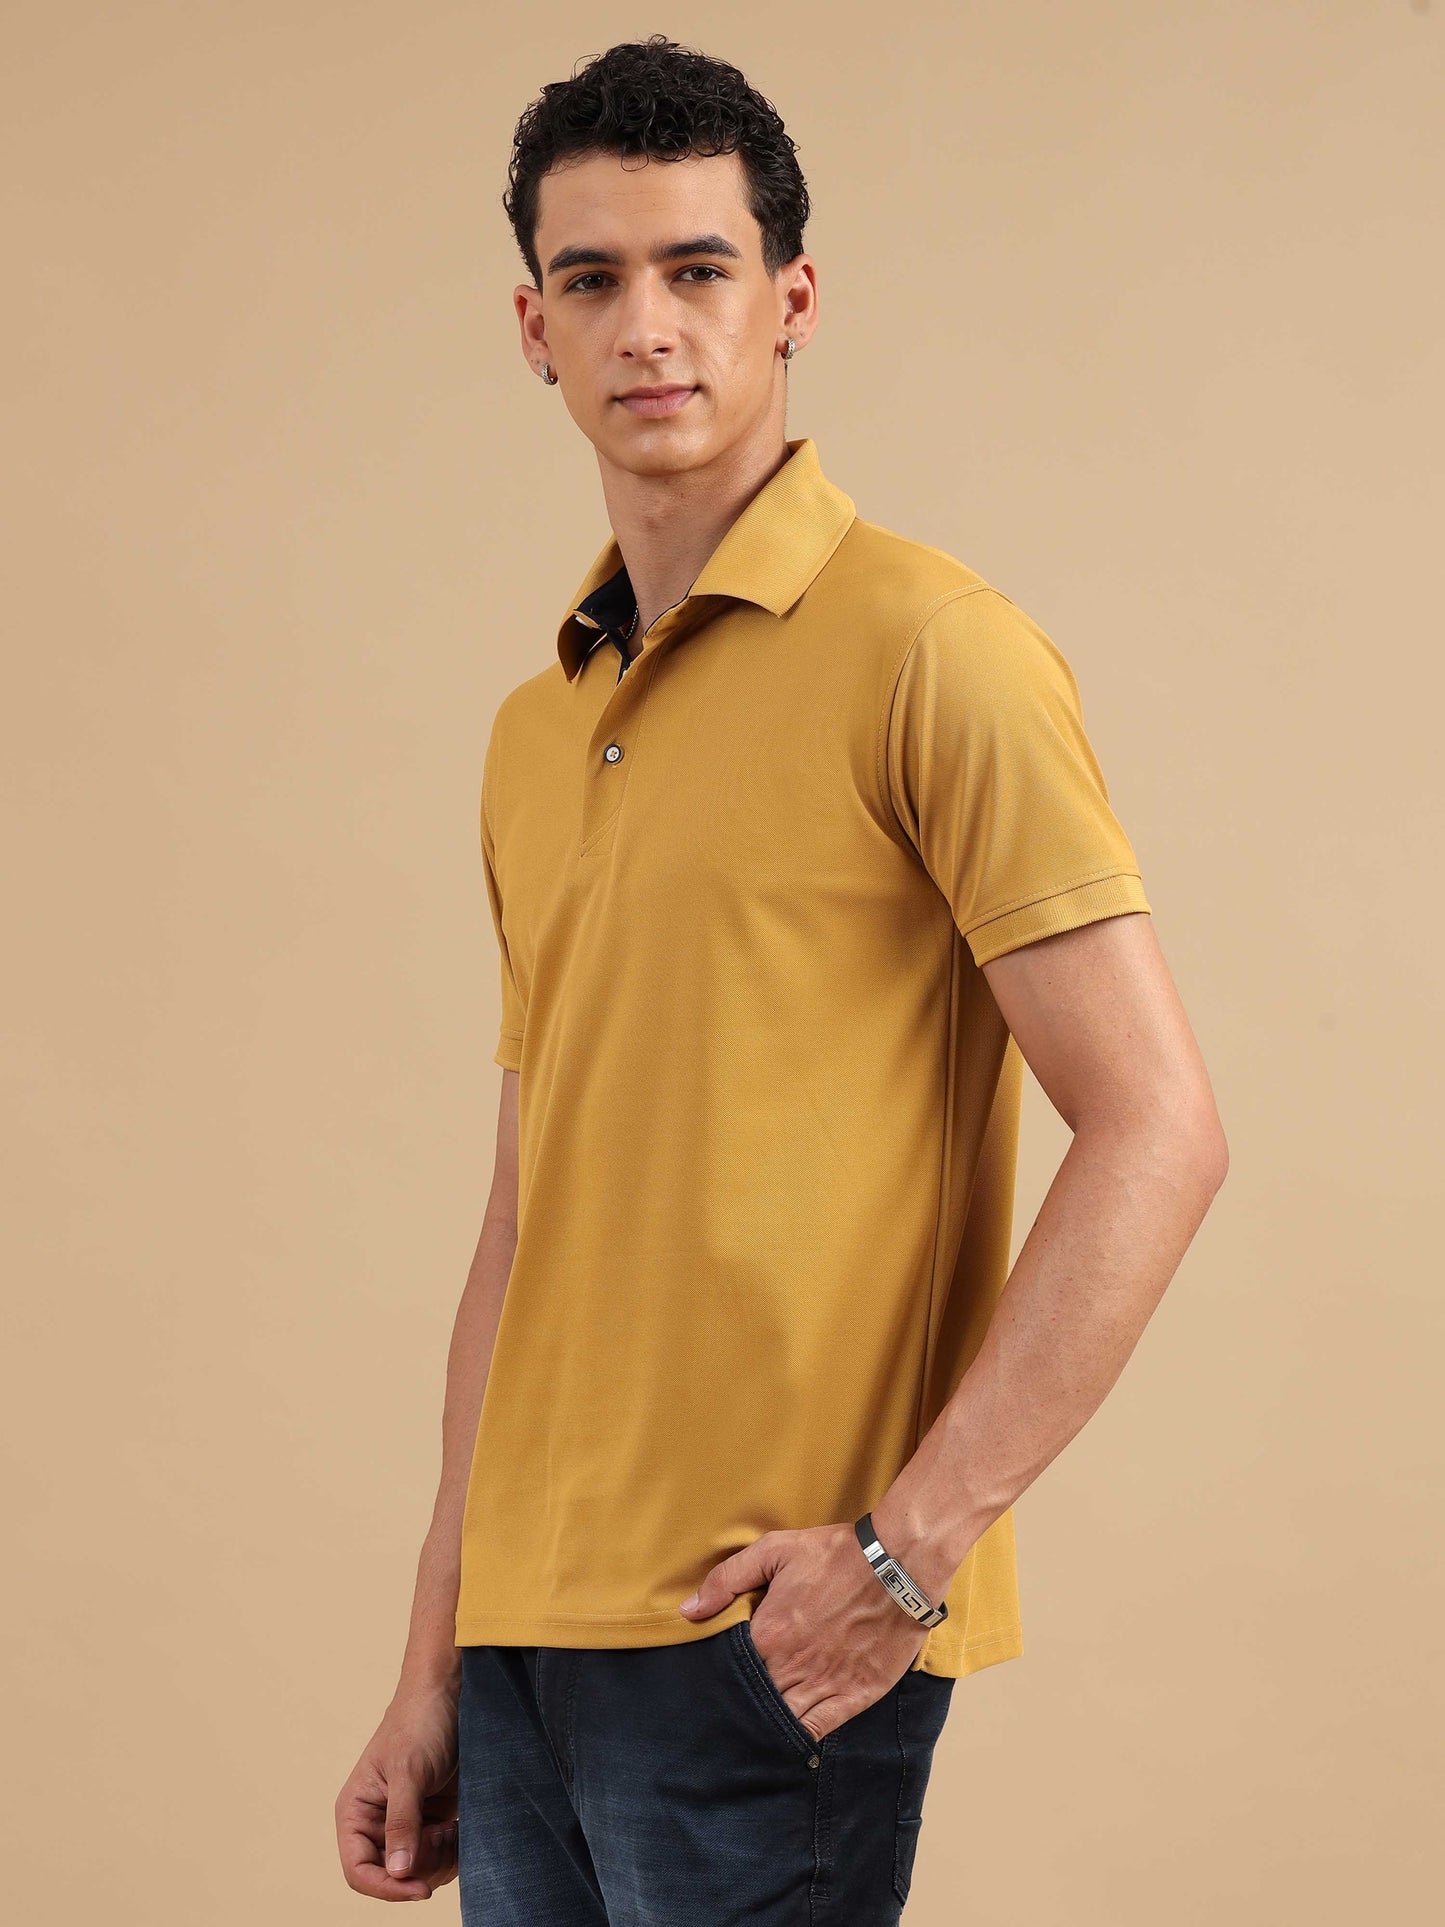 Mustard Yellow Men's Polo T-shirt